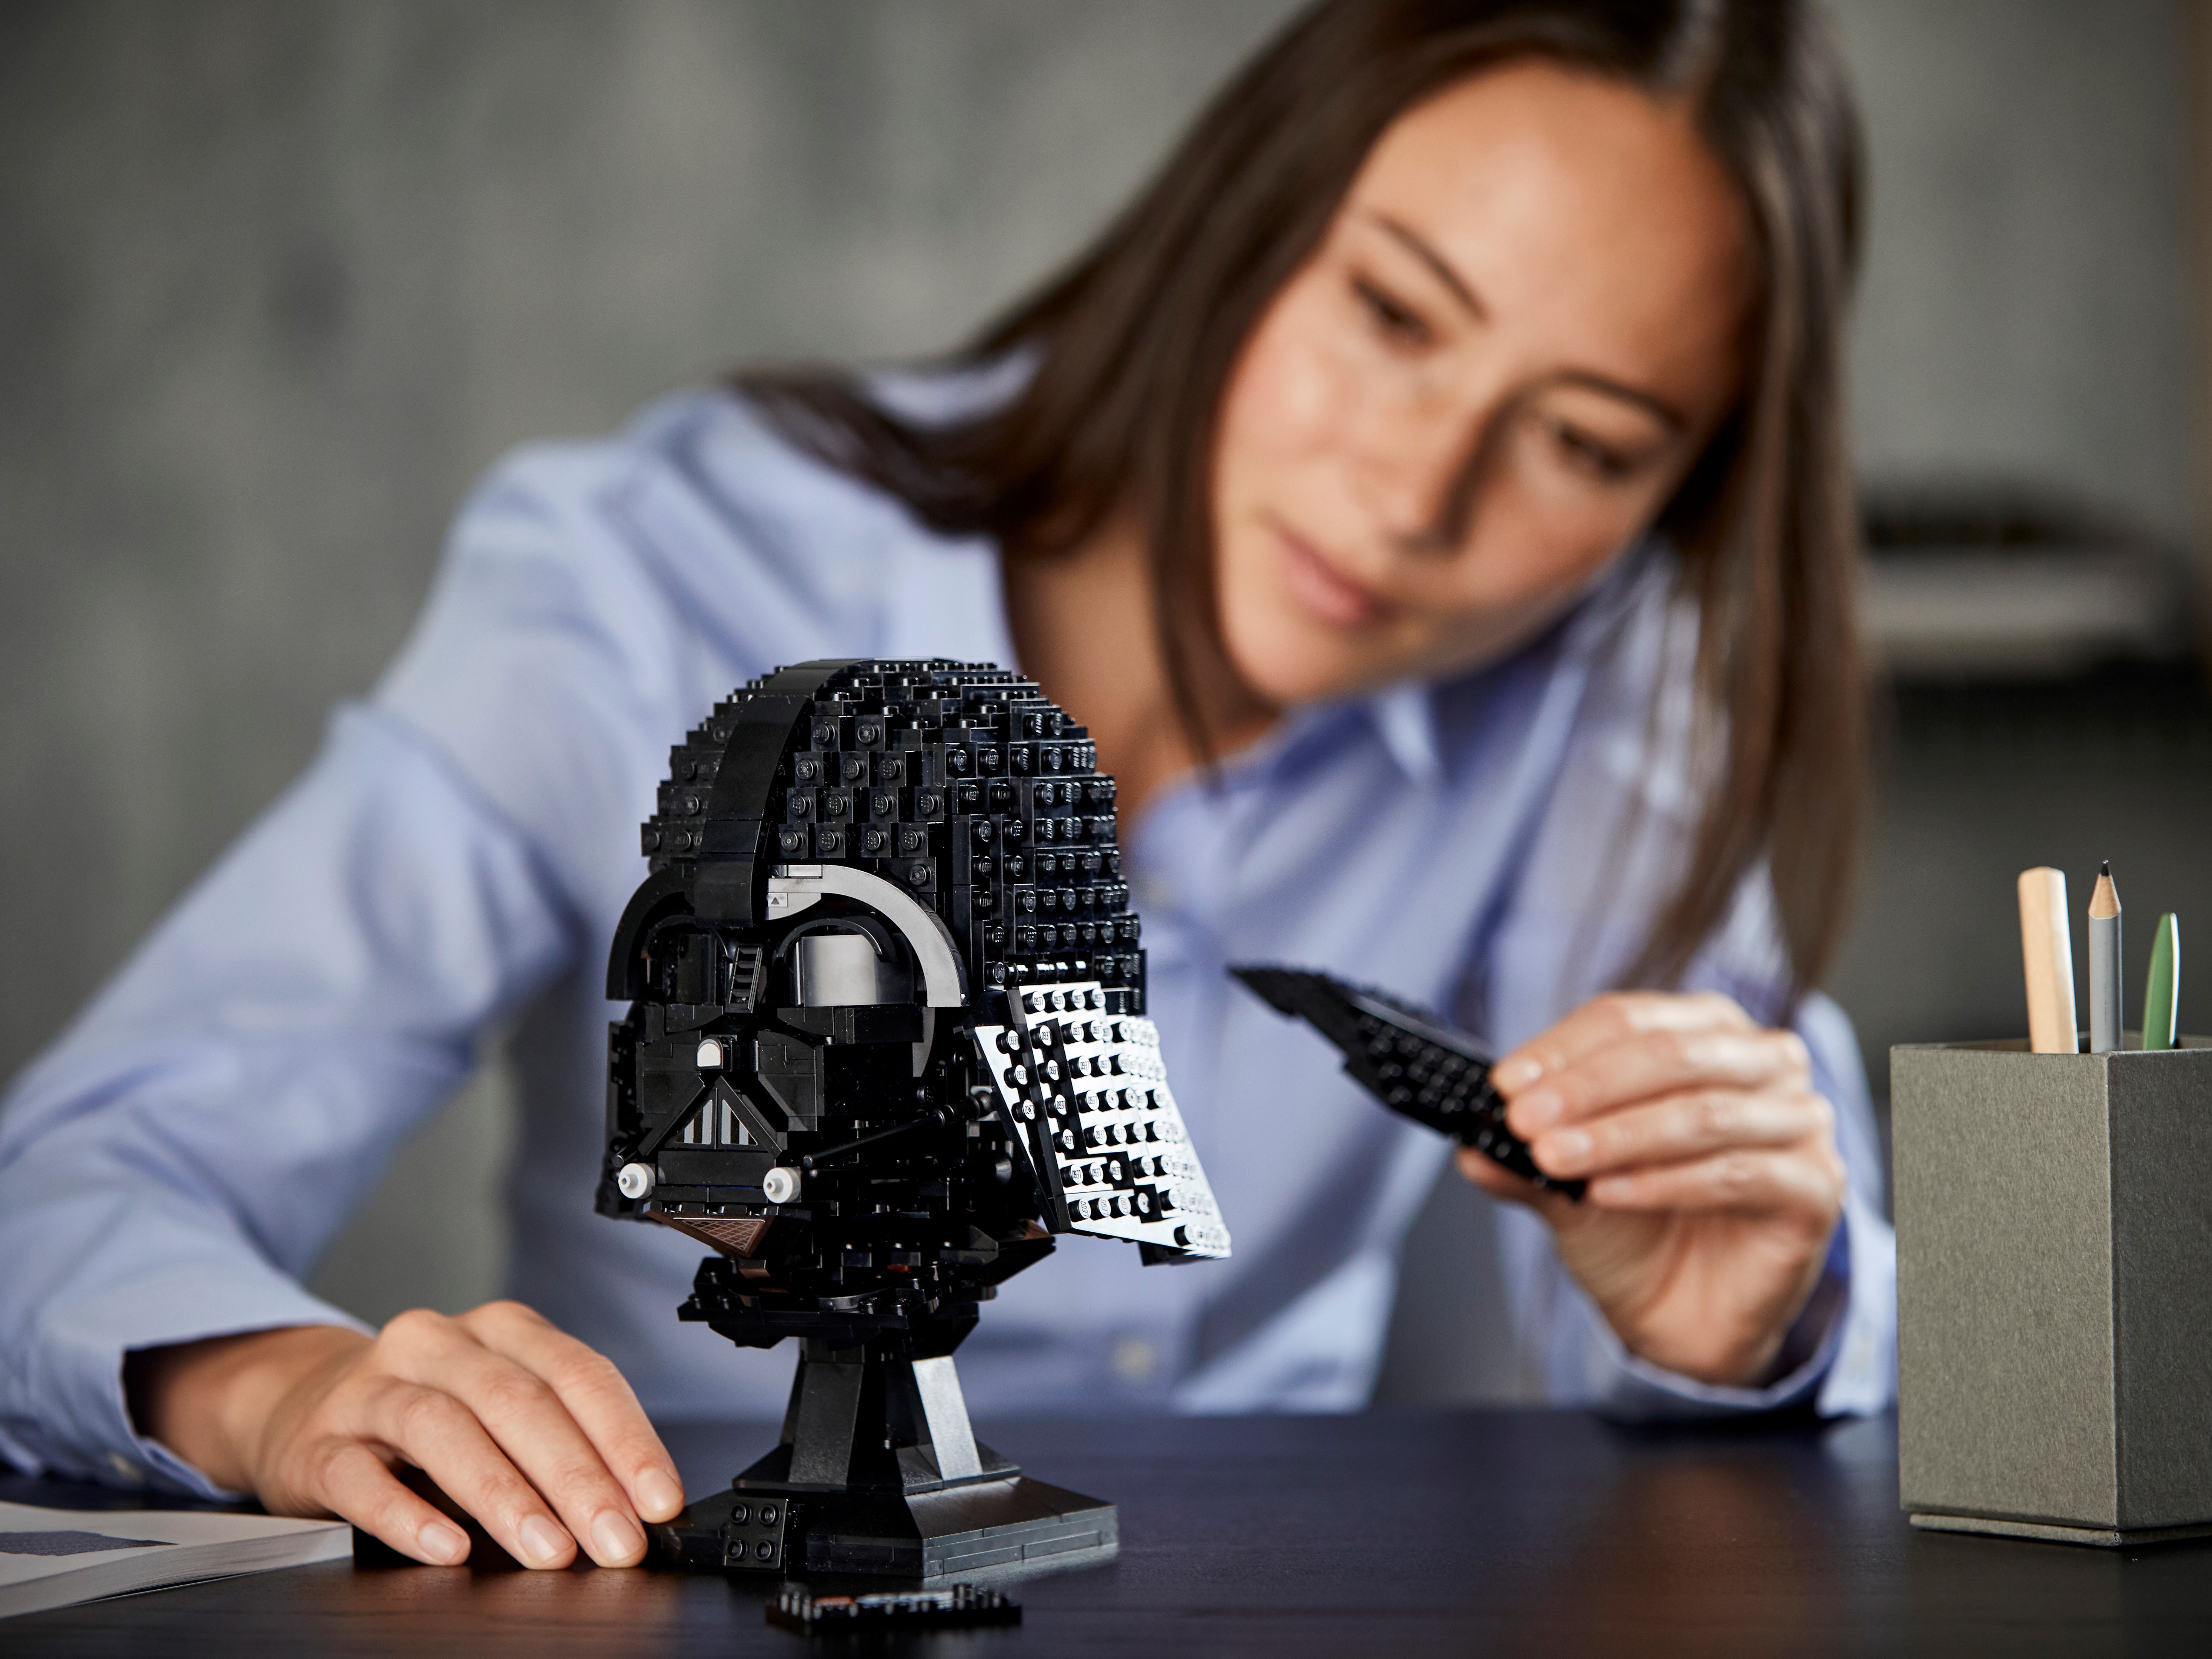 LEGO Star Wars Darth Vader Helmet 75304 Set, Mask Display Model